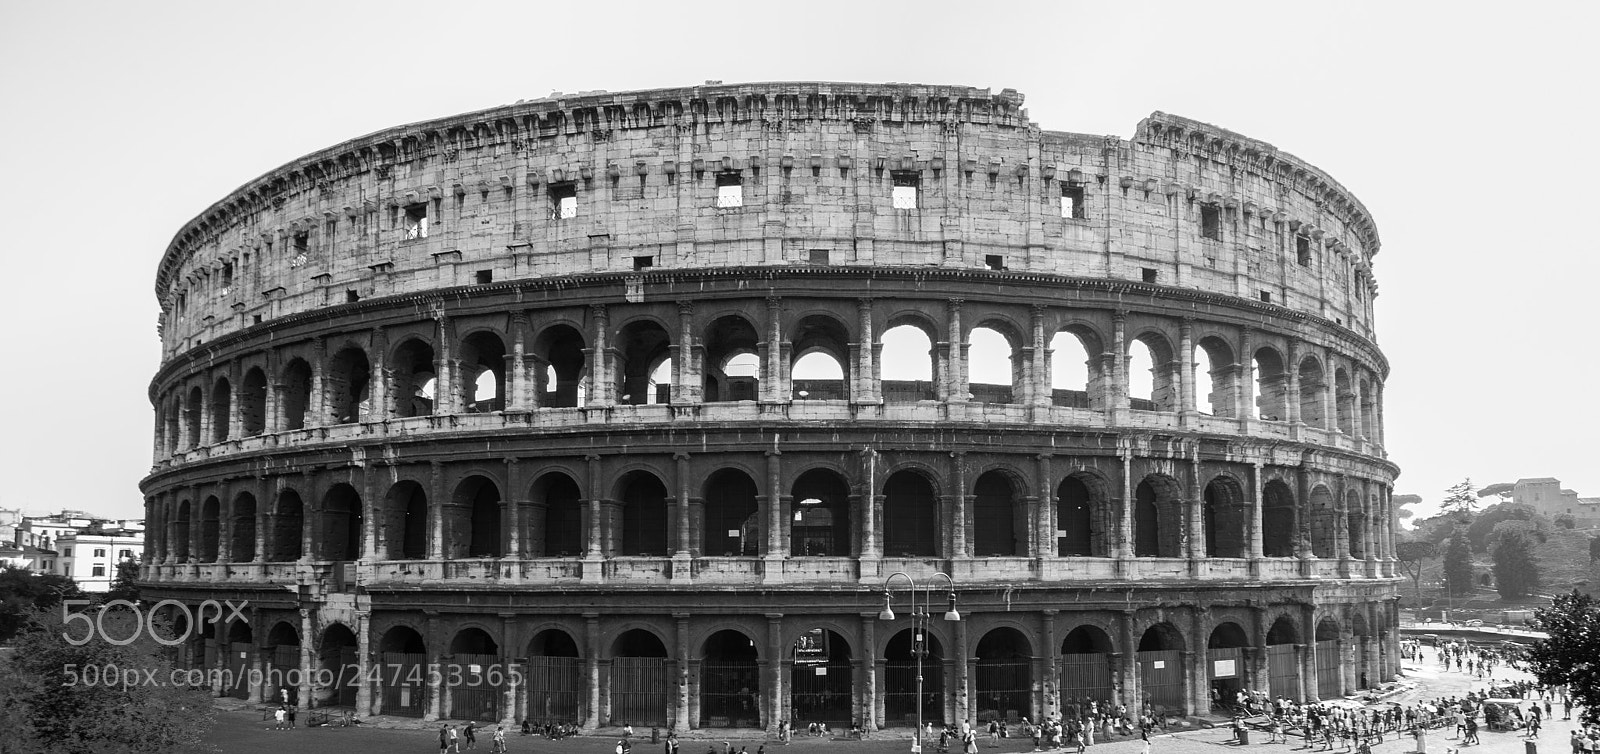 Nikon D80 sample photo. Colosseo photography